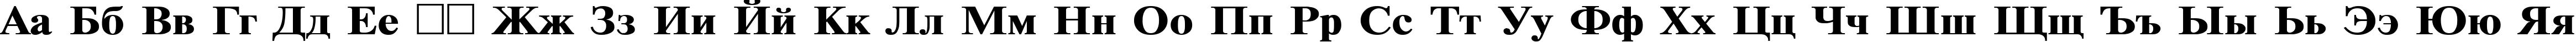 Пример написания русского алфавита шрифтом TimesET120b